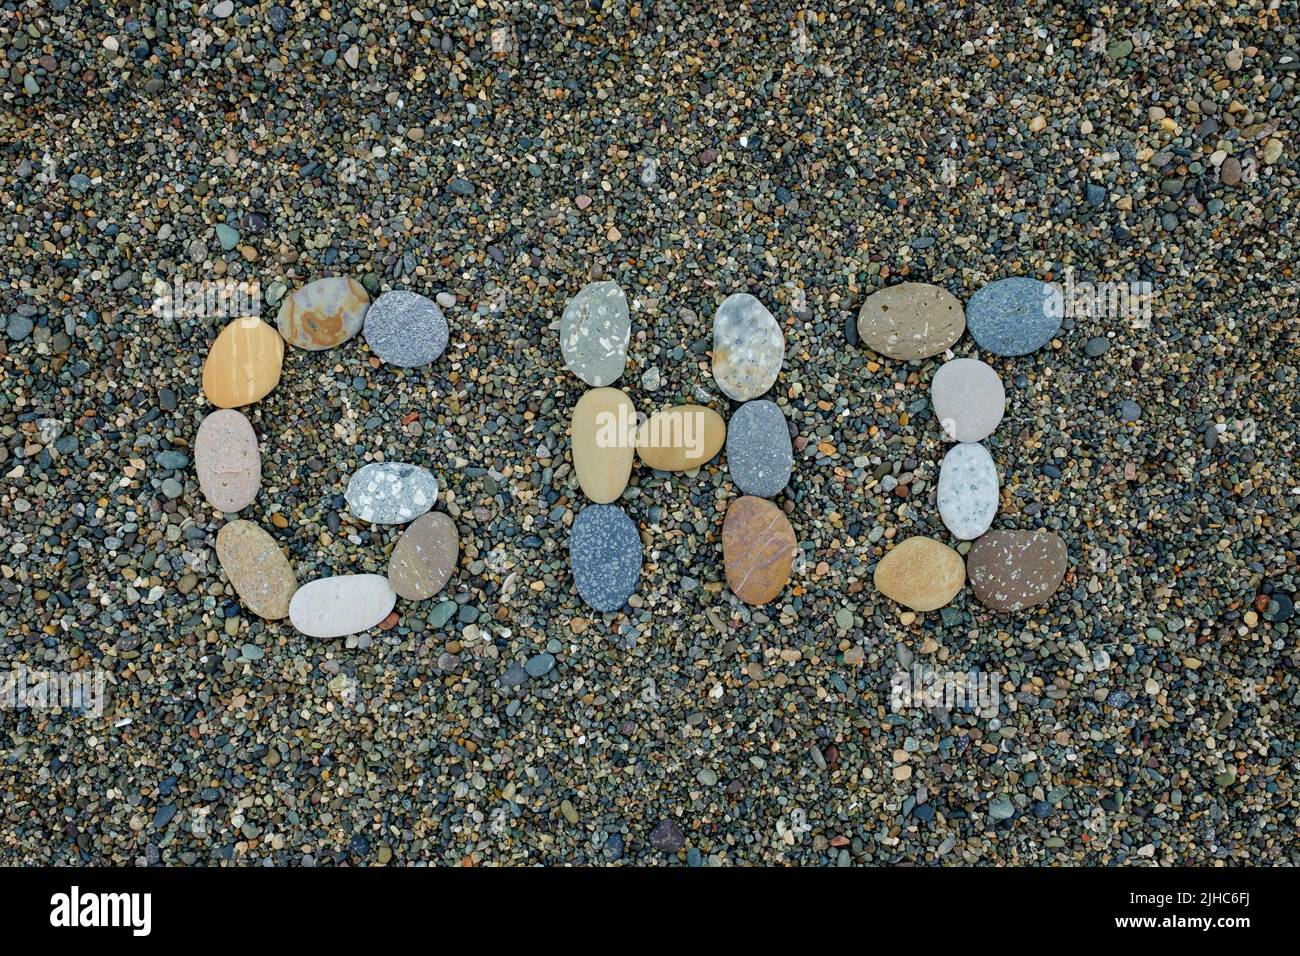 letras del alfabeto g h hice de piedras en la arena de la playa Foto de stock